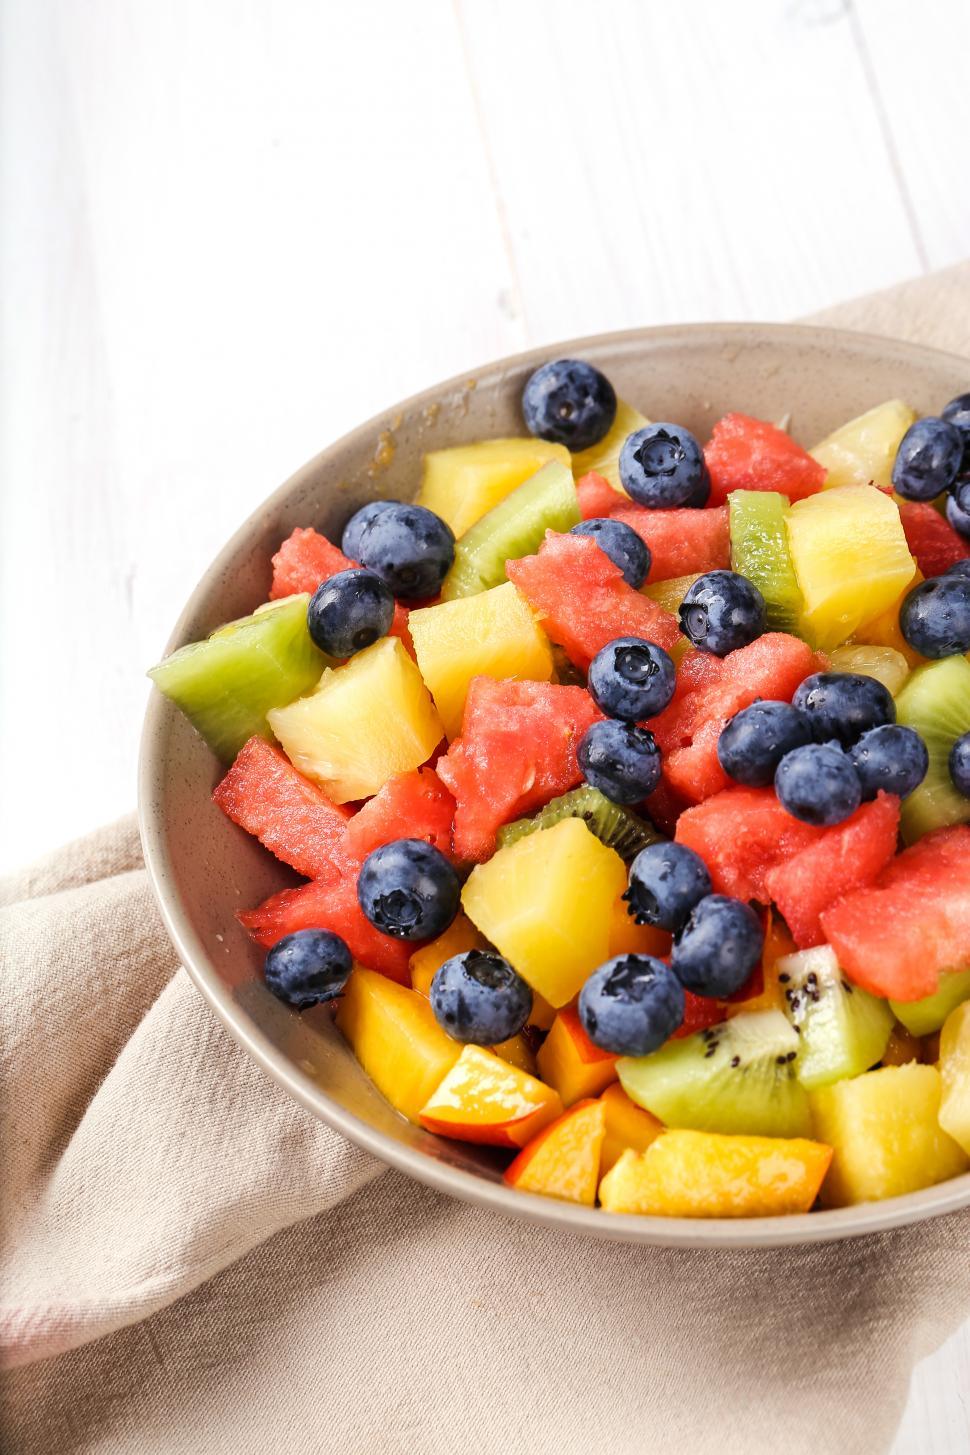 Free Image of Bowl of fruit salad 